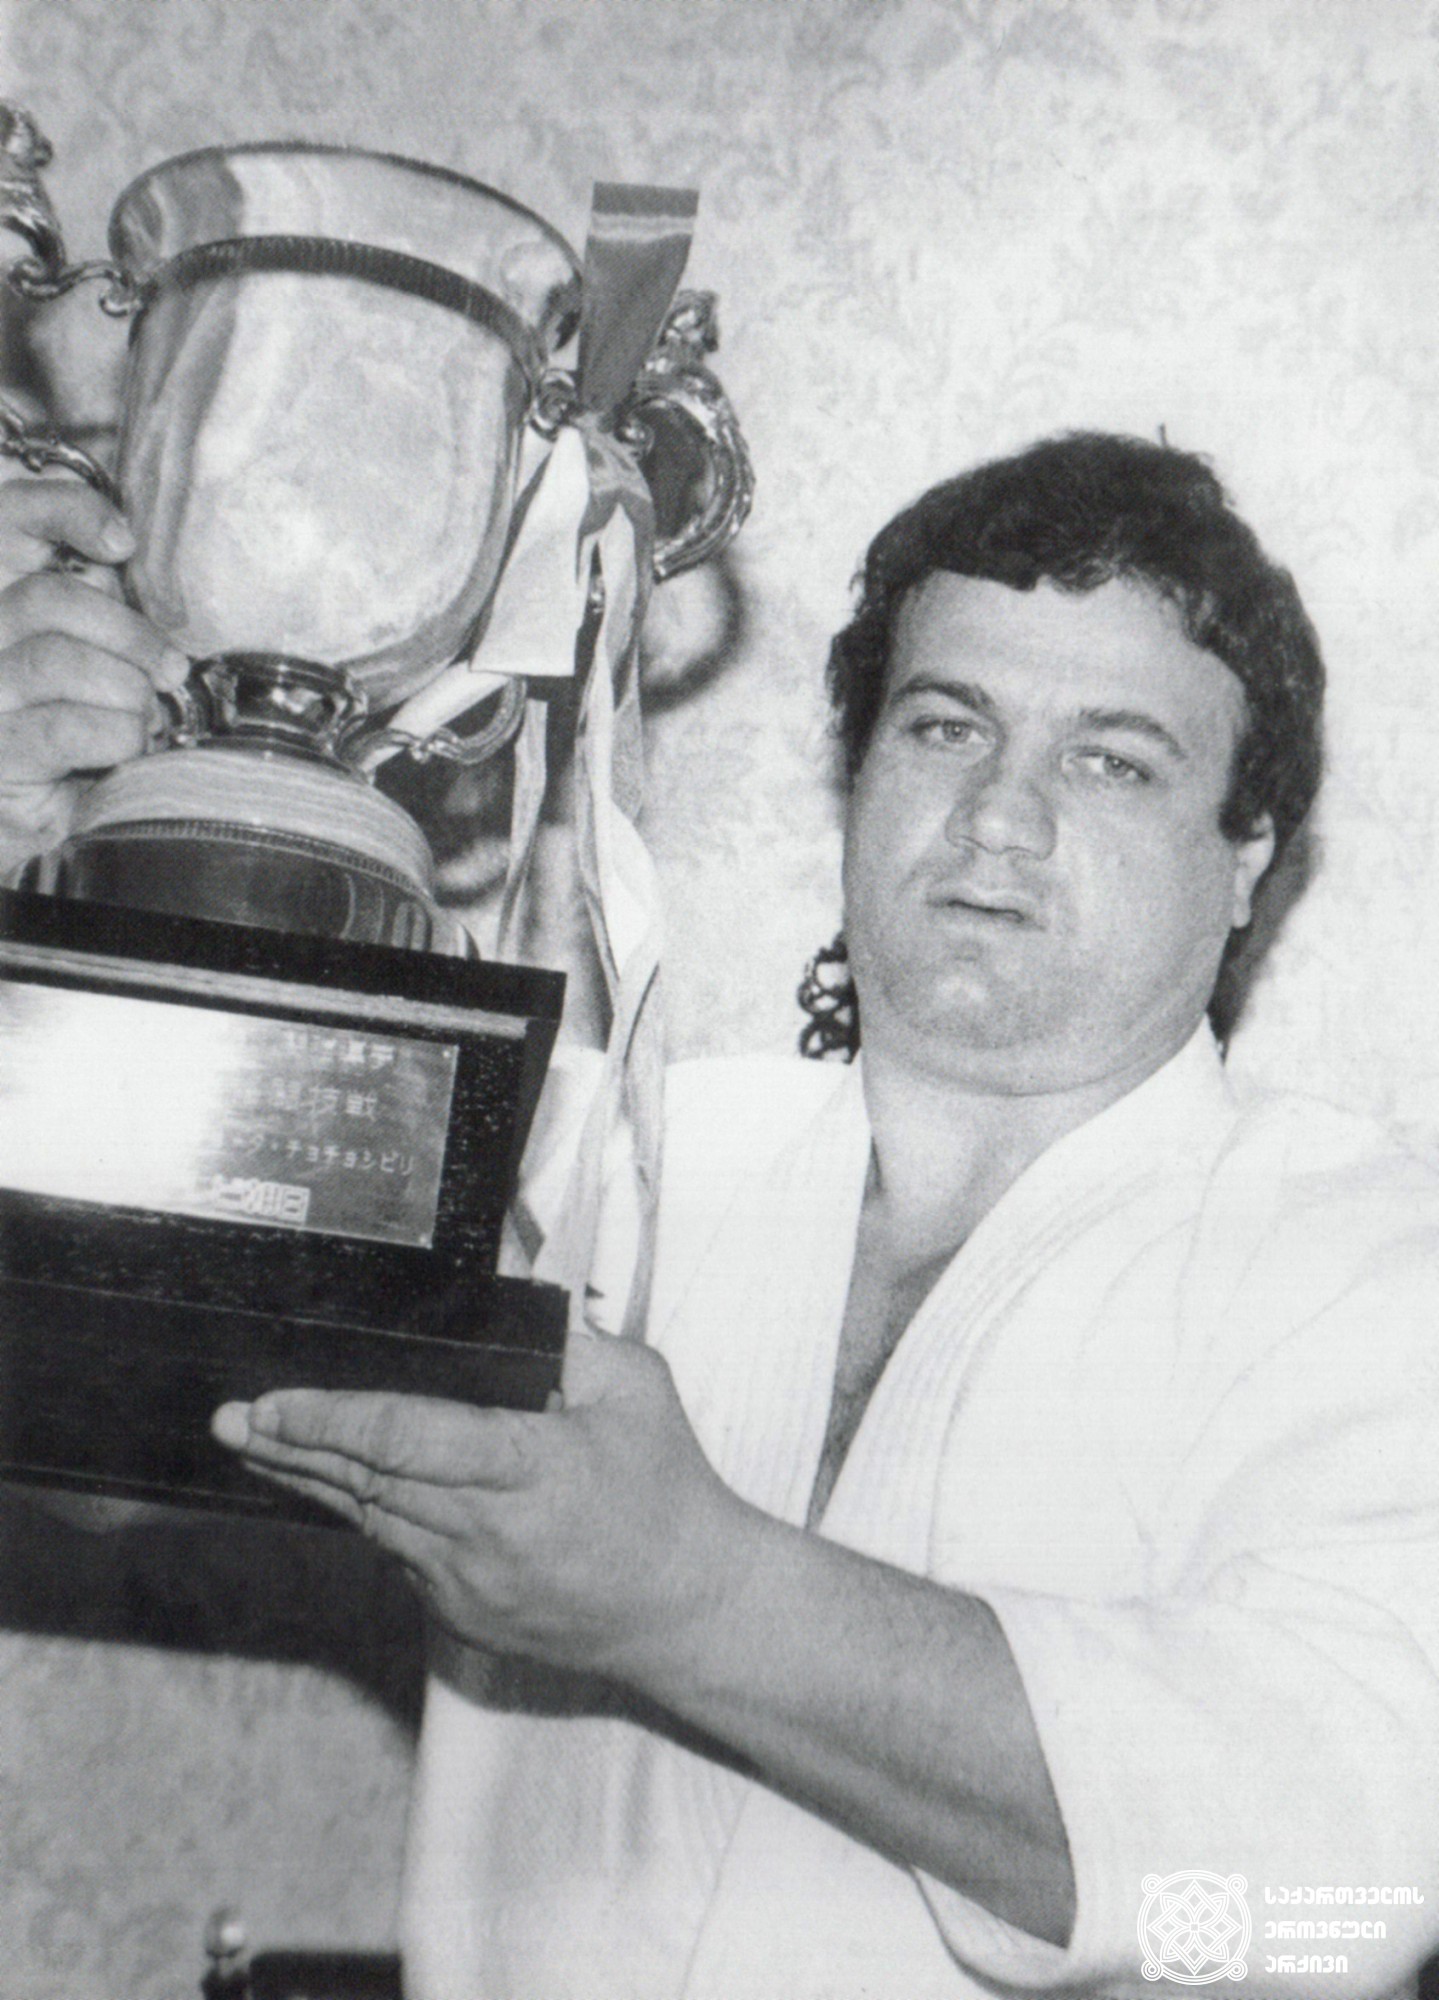 შოთა ჩოჩიშვილი. <br>
XX ოლიმპიური თამაშების ჩემპიონი ძიუდოში (1972 წელი, მიუნხენი). <br>
Shota Chochishvili. <br>
Champion of the XX Olympic Games in Judo (1972, Munich).